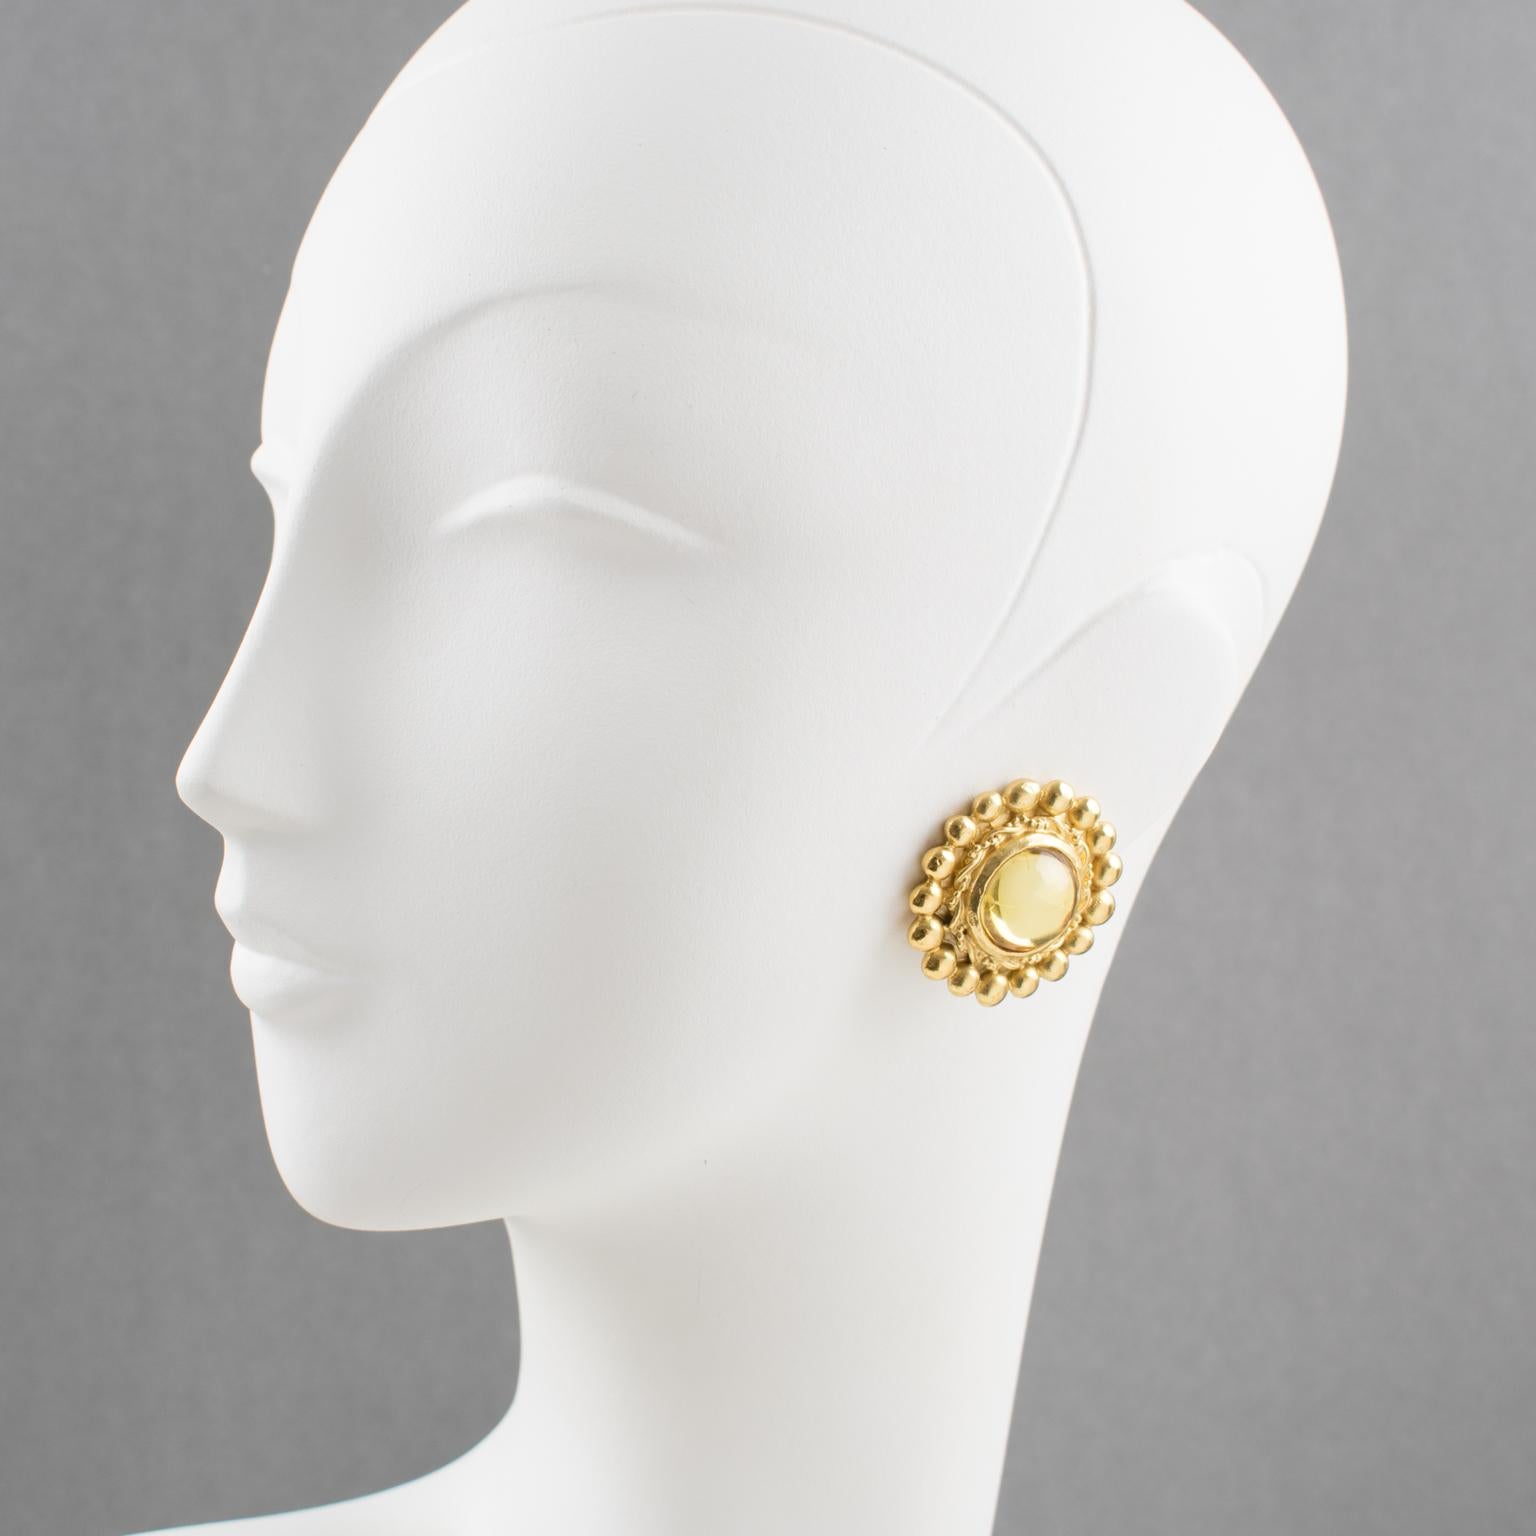 Elégantes boucles d'oreilles à clip signées Sonia Rykiel Paris, créatrice de mode française. Elles présentent une forme arrondie en métal doré avec texture, surmontée d'un grand cabochon en résine de couleur jaune clair champagne. Signé en dessous :